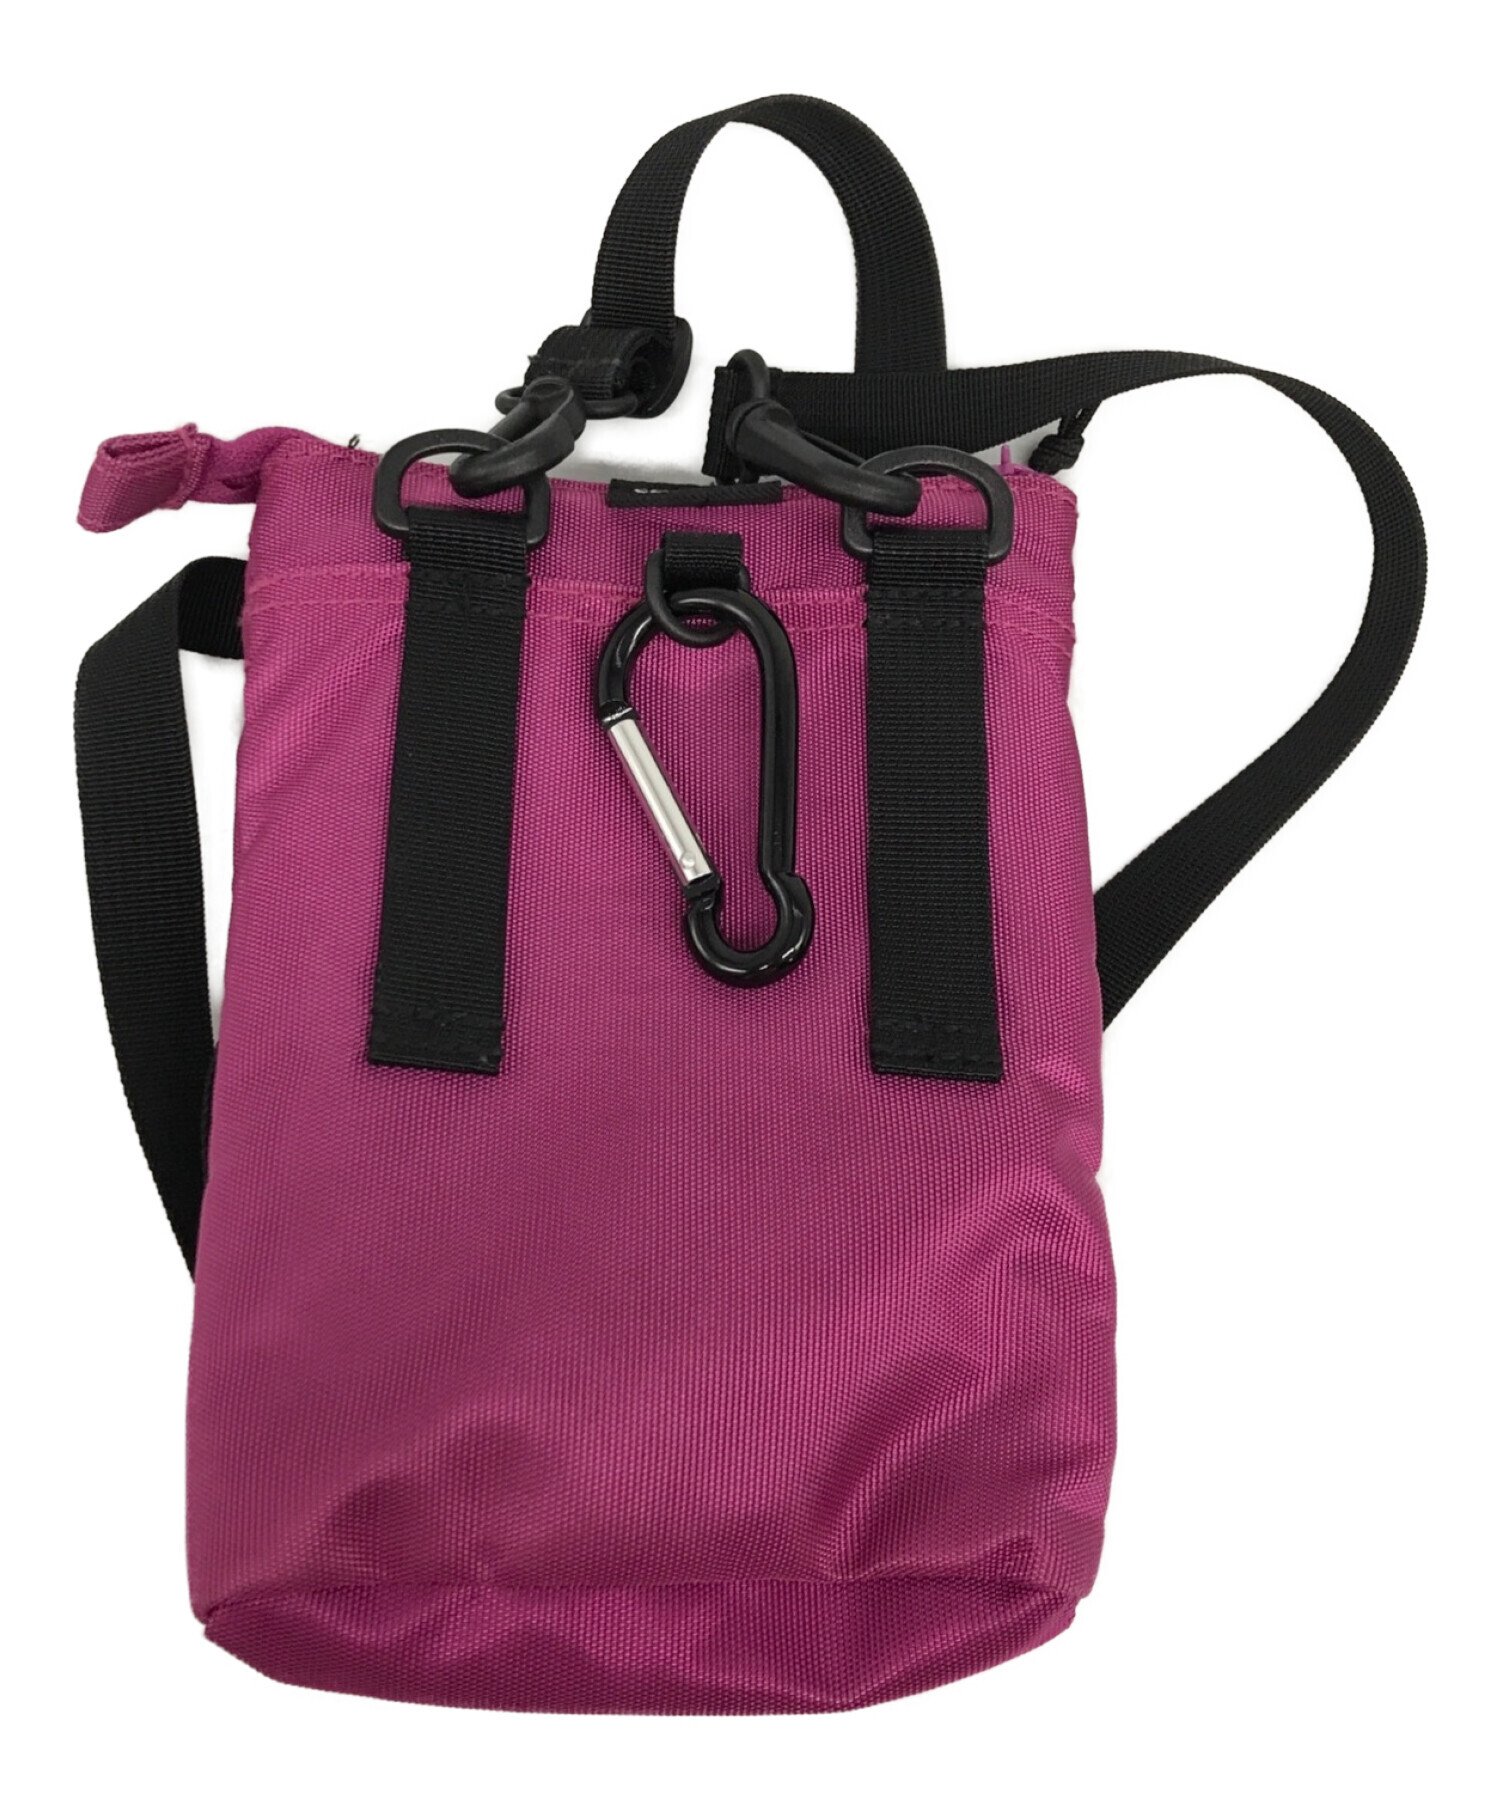 中古・古着通販】SUPREME (シュプリーム) Shoulder Bag 19AW ピンク